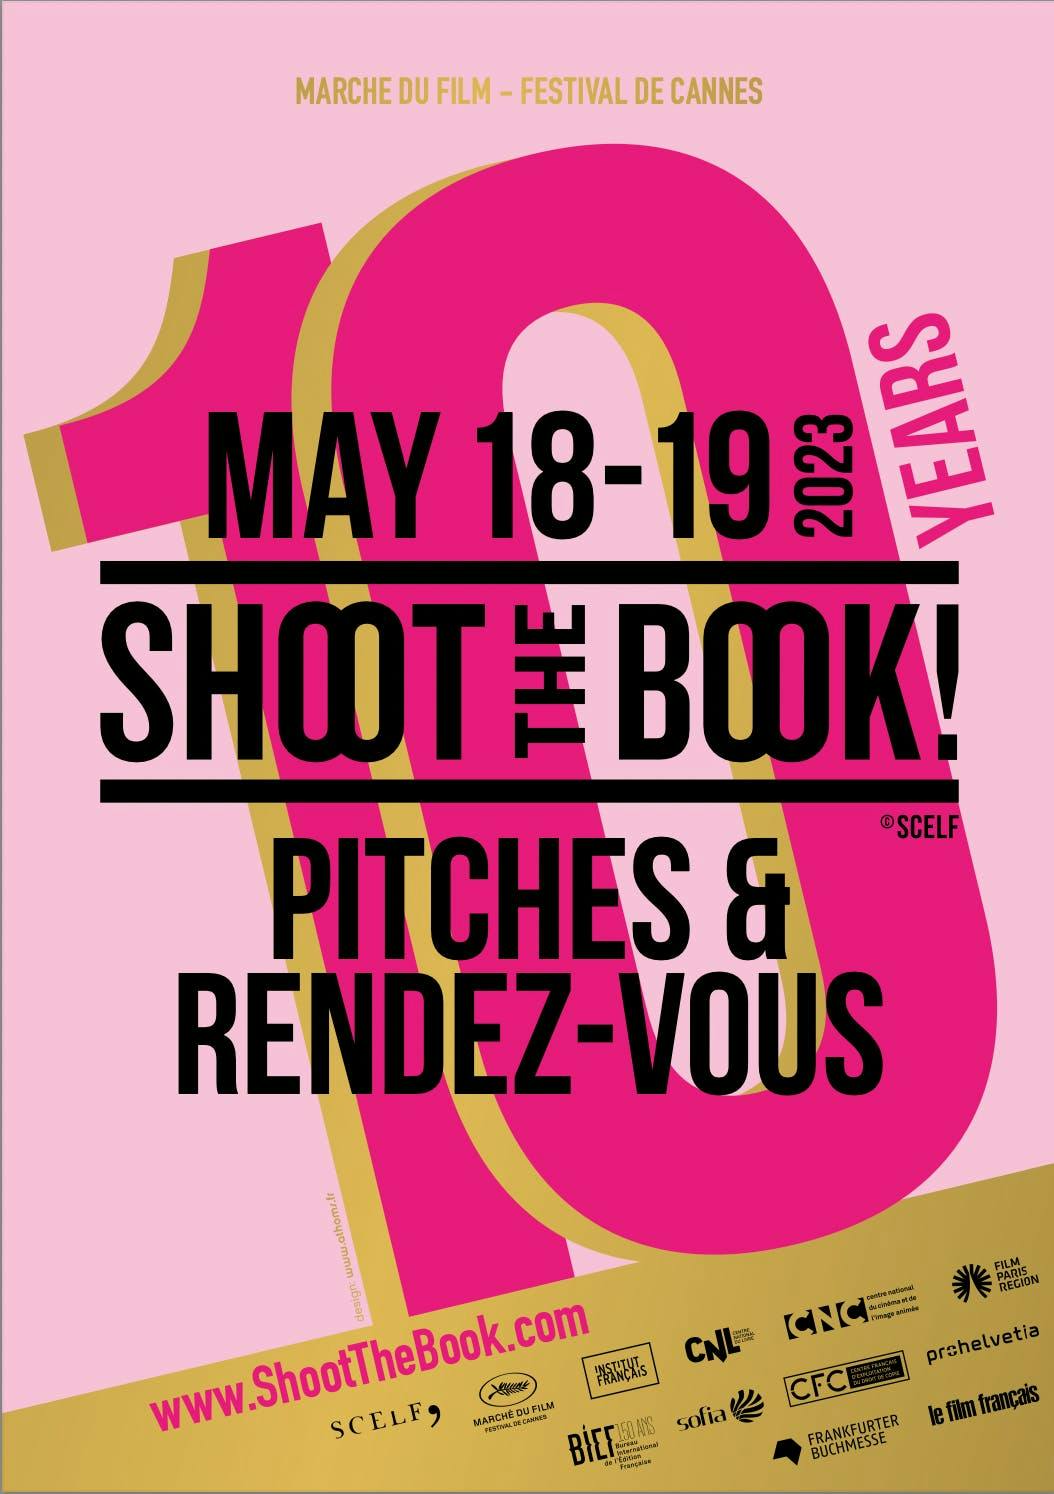 L'affiche officielle de l'initiative Shoot the Book, qui fête ses 10 ans à Cannes.